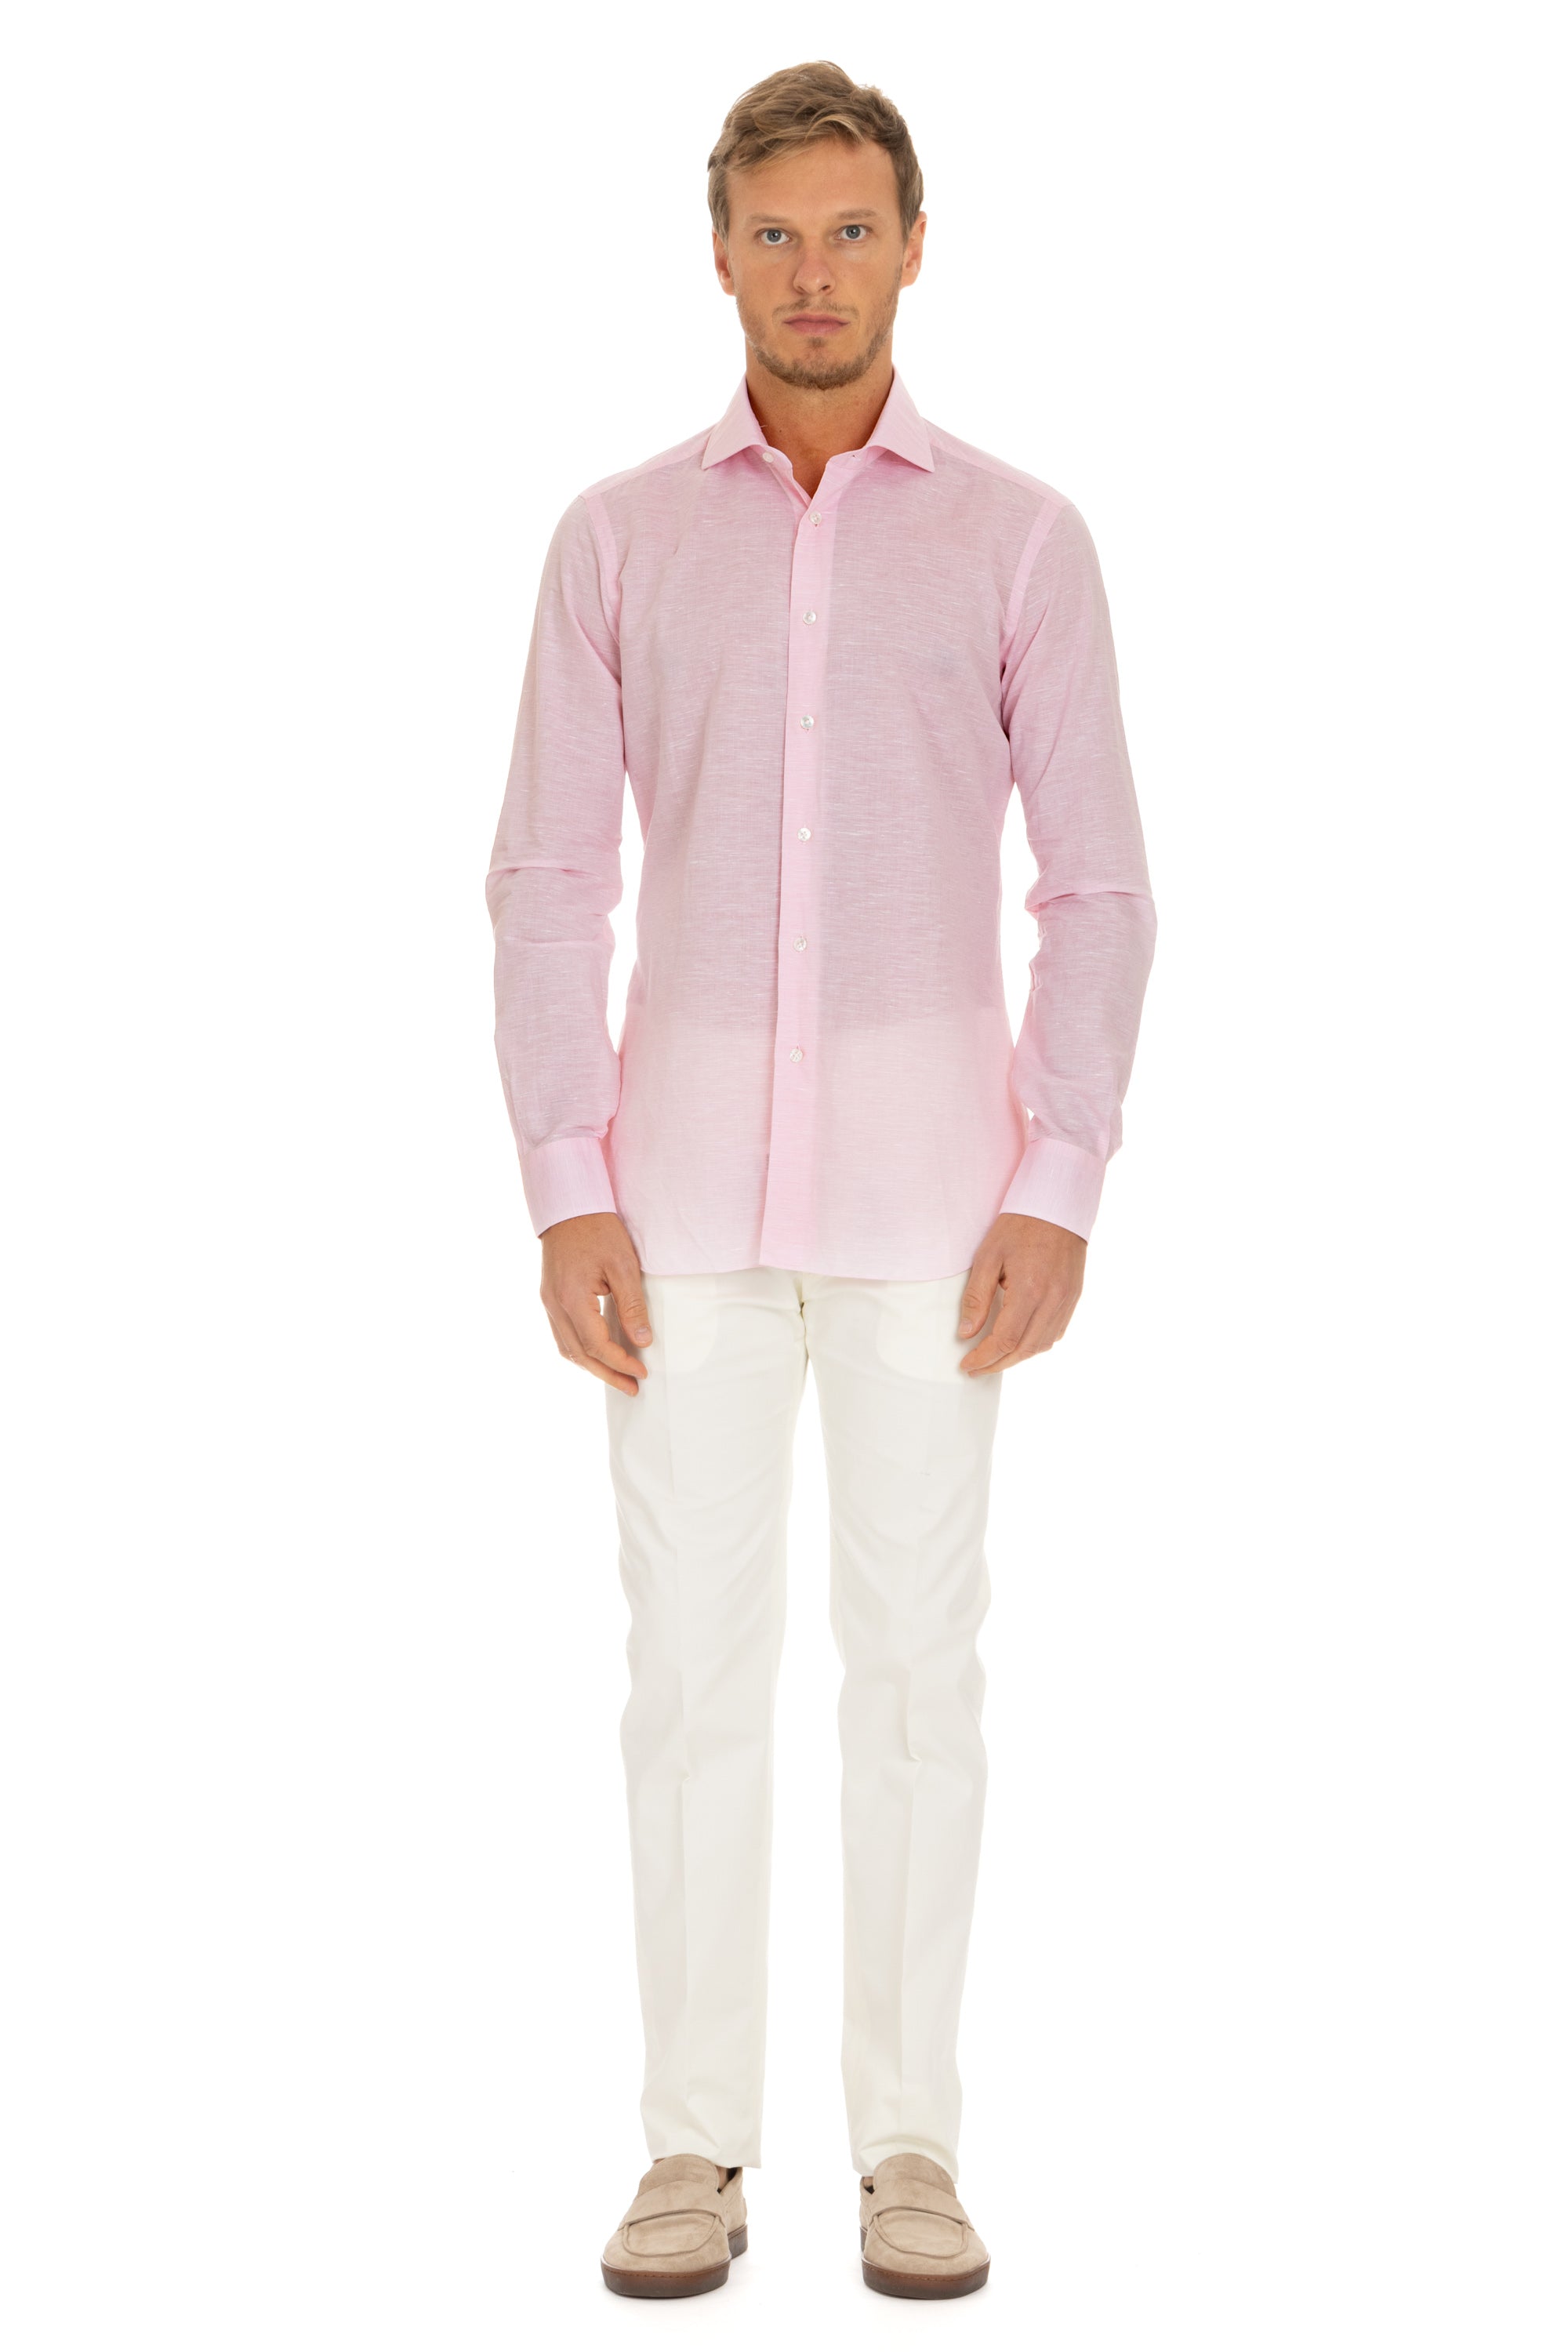 Culto line cotton-linen shirt